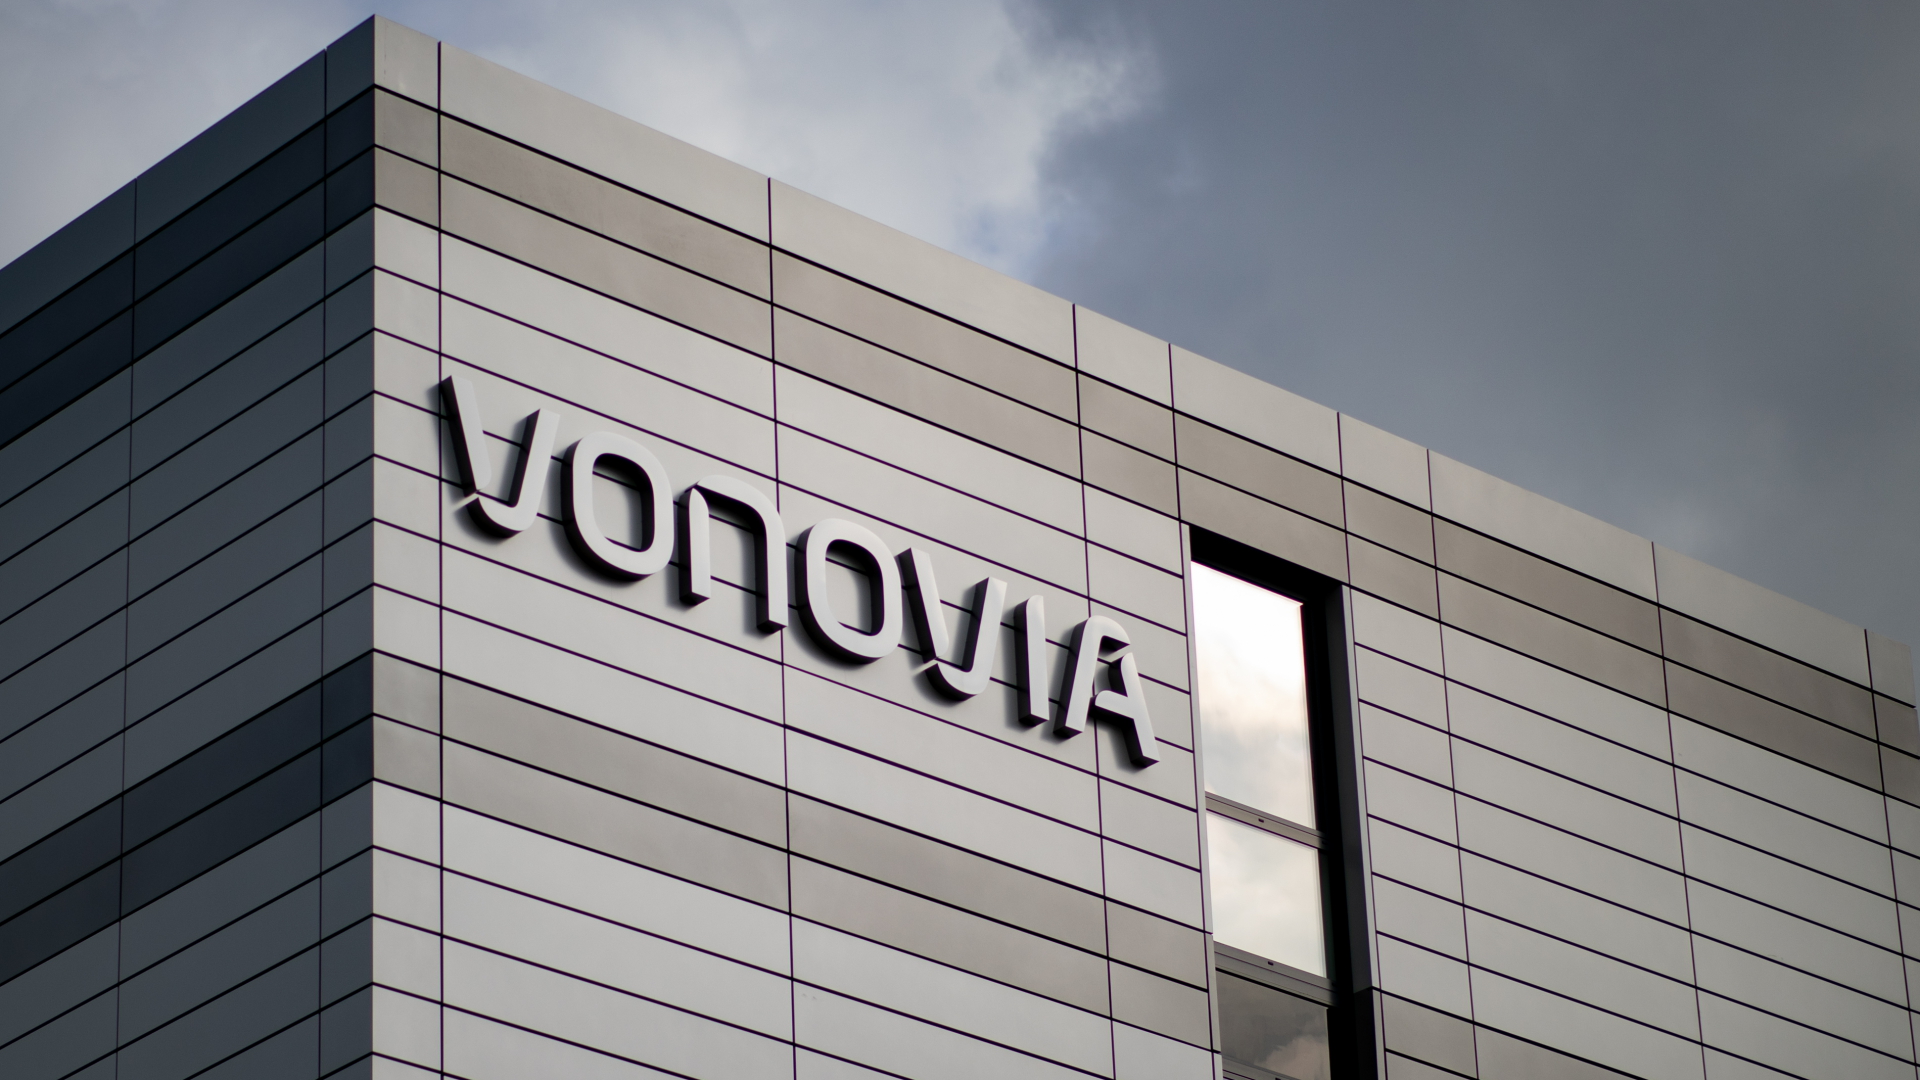 Immobilienkonzern Vonovia – Schmiergeld mit System?